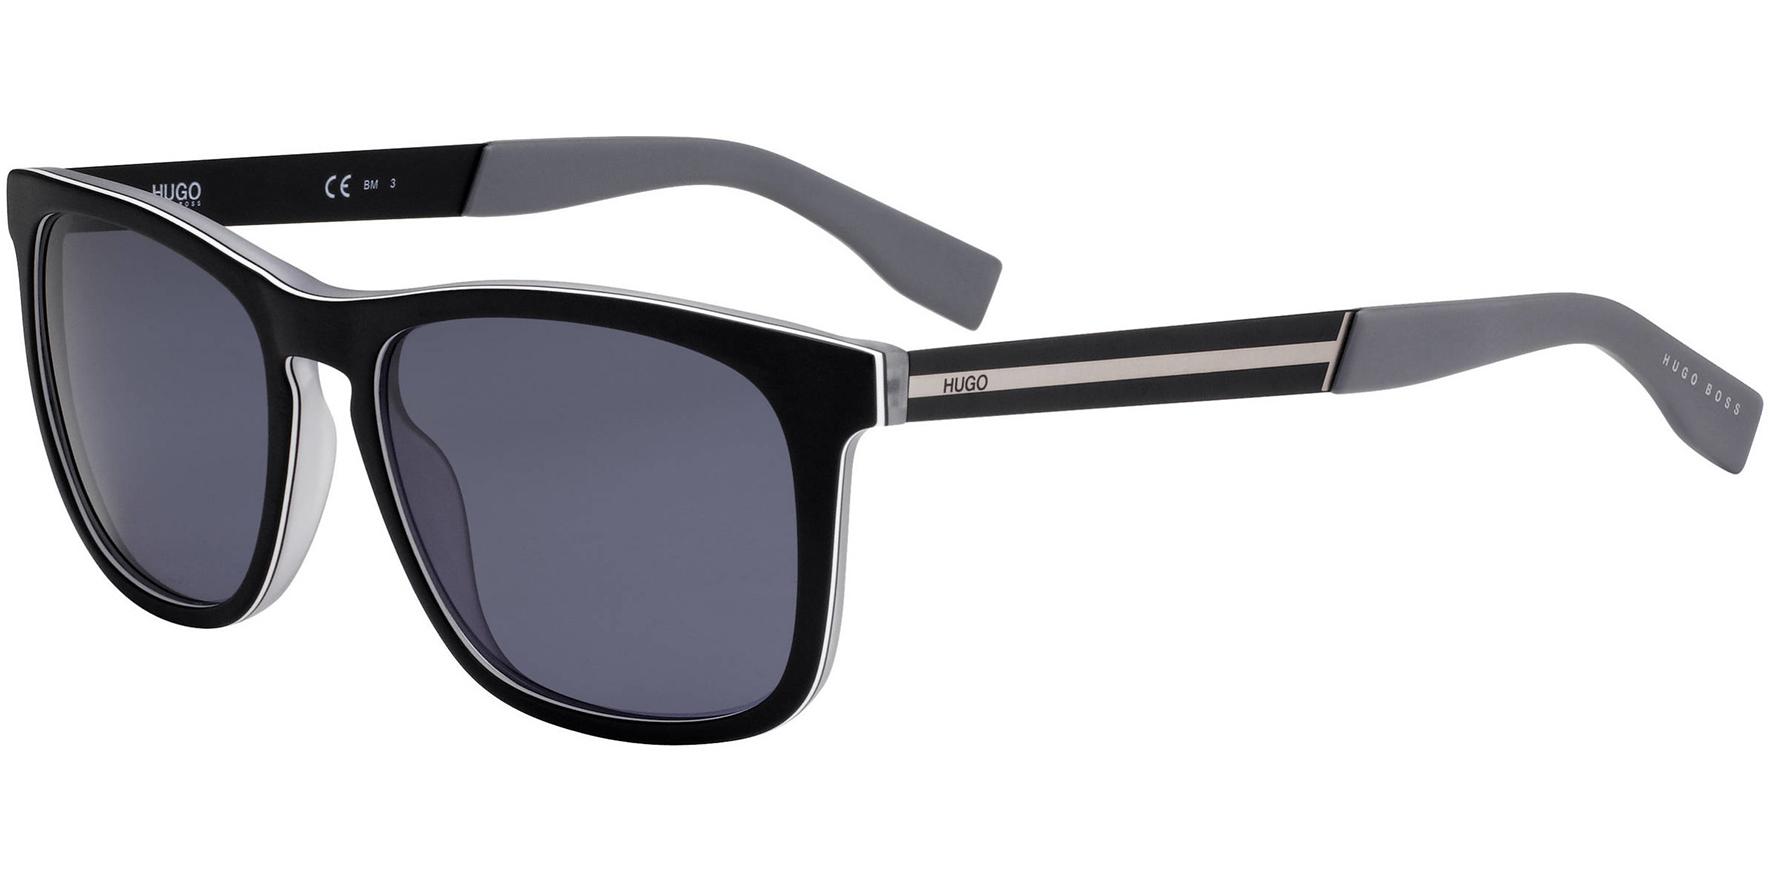 Hugo By Hugo Boss Square Sunglasses for $32 Shipped